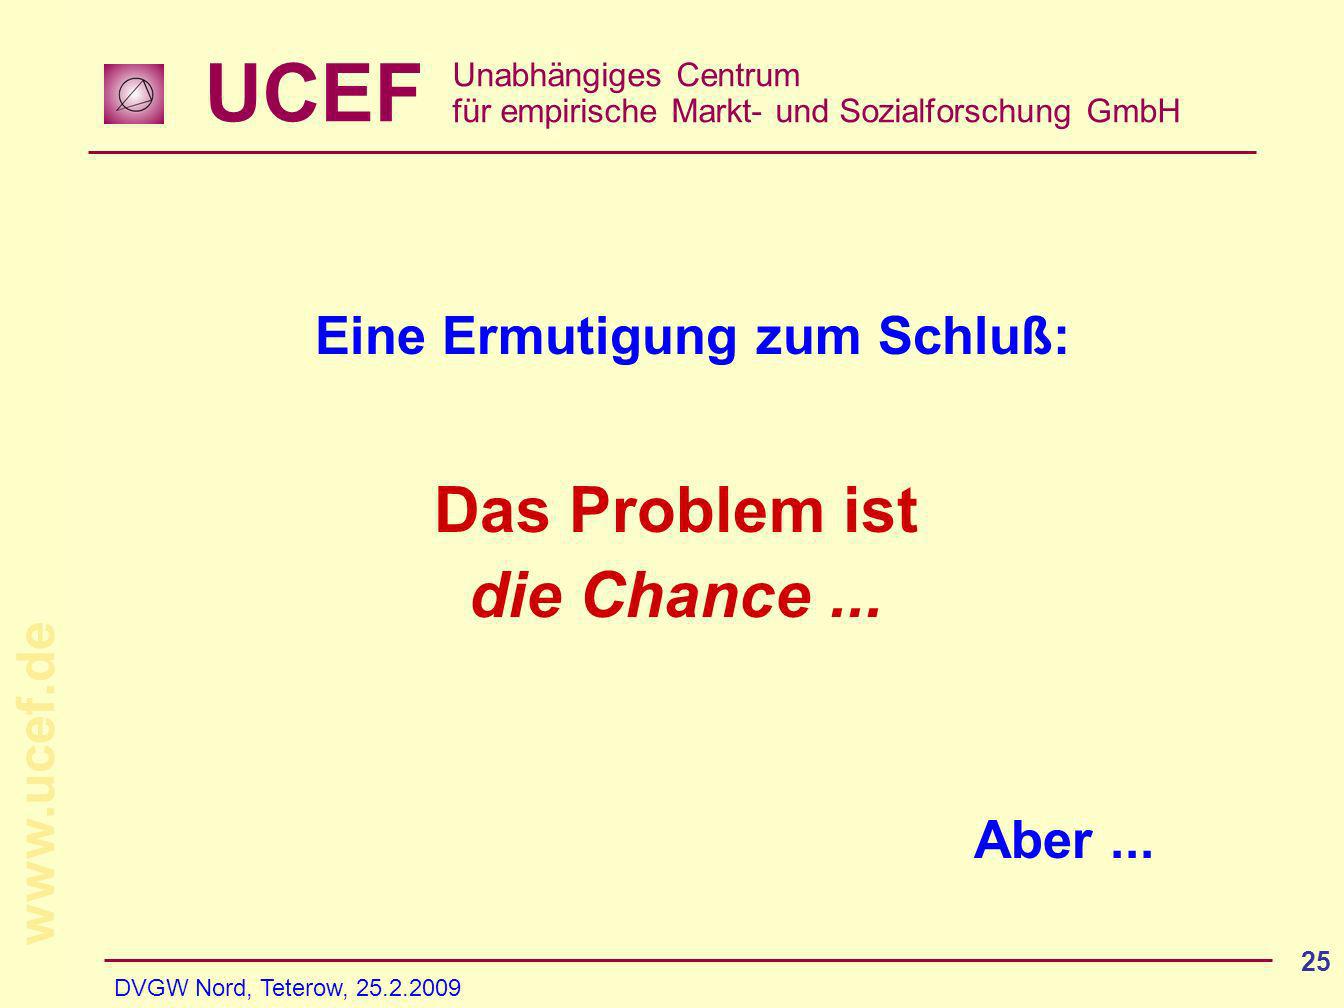 UCEF Unabhängiges Centrum für empirische Markt- und Sozialforschung GmbH   DVGW Nord, Teterow, Eine Ermutigung zum Schluß: Aber...